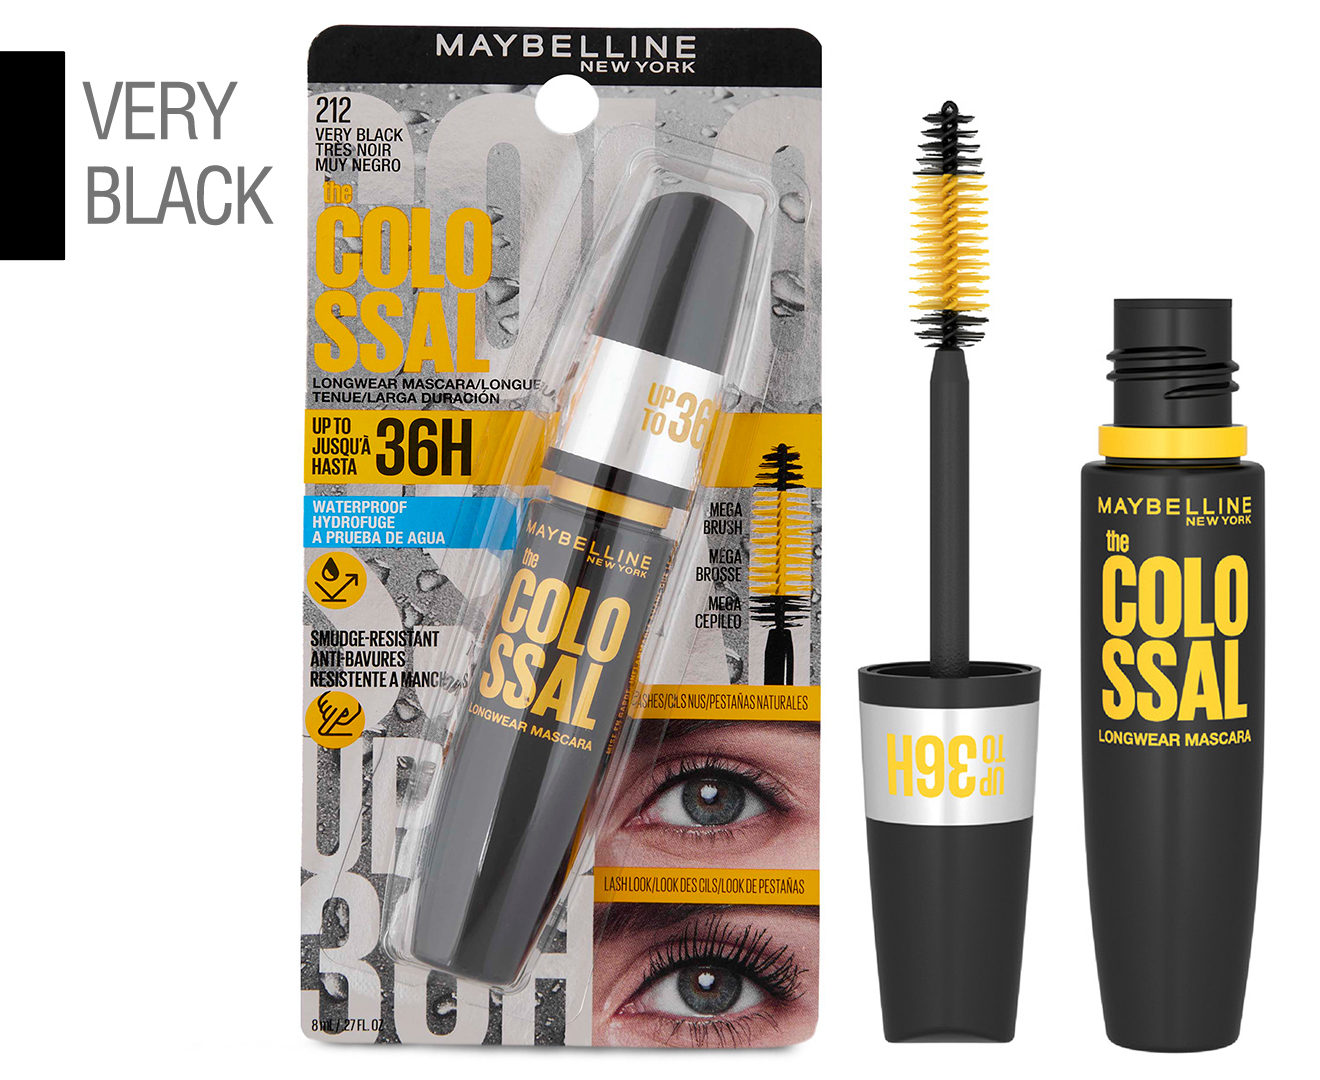 Mascara 8mL 36H Maybelline The Very Longwear Black Colossal - Waterproof